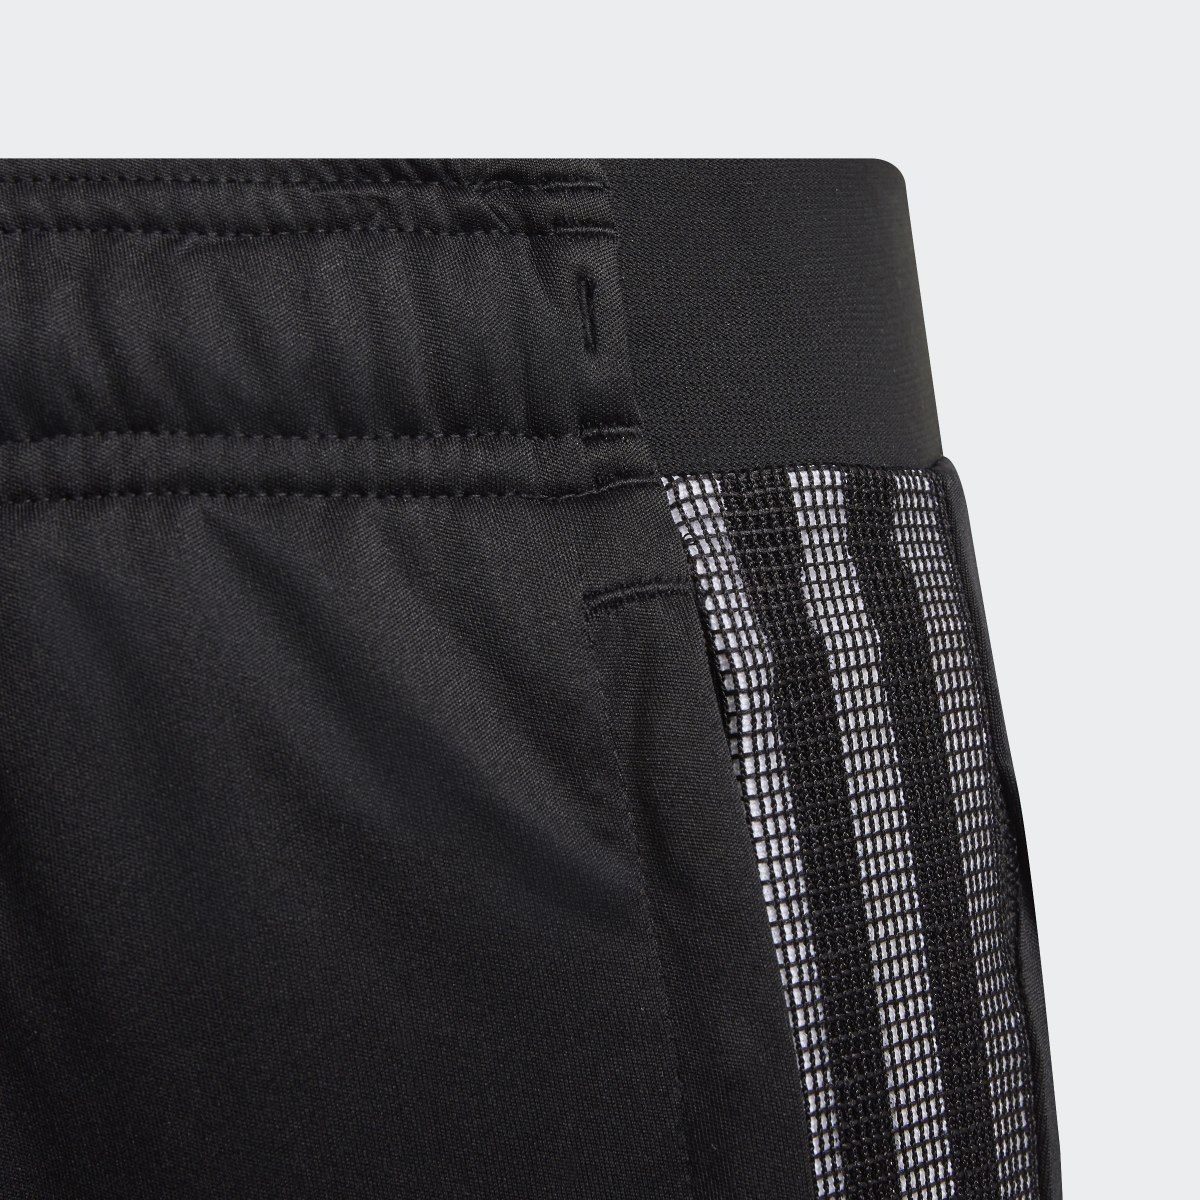 Adidas Pantalon Tiro 21 3/4. 5